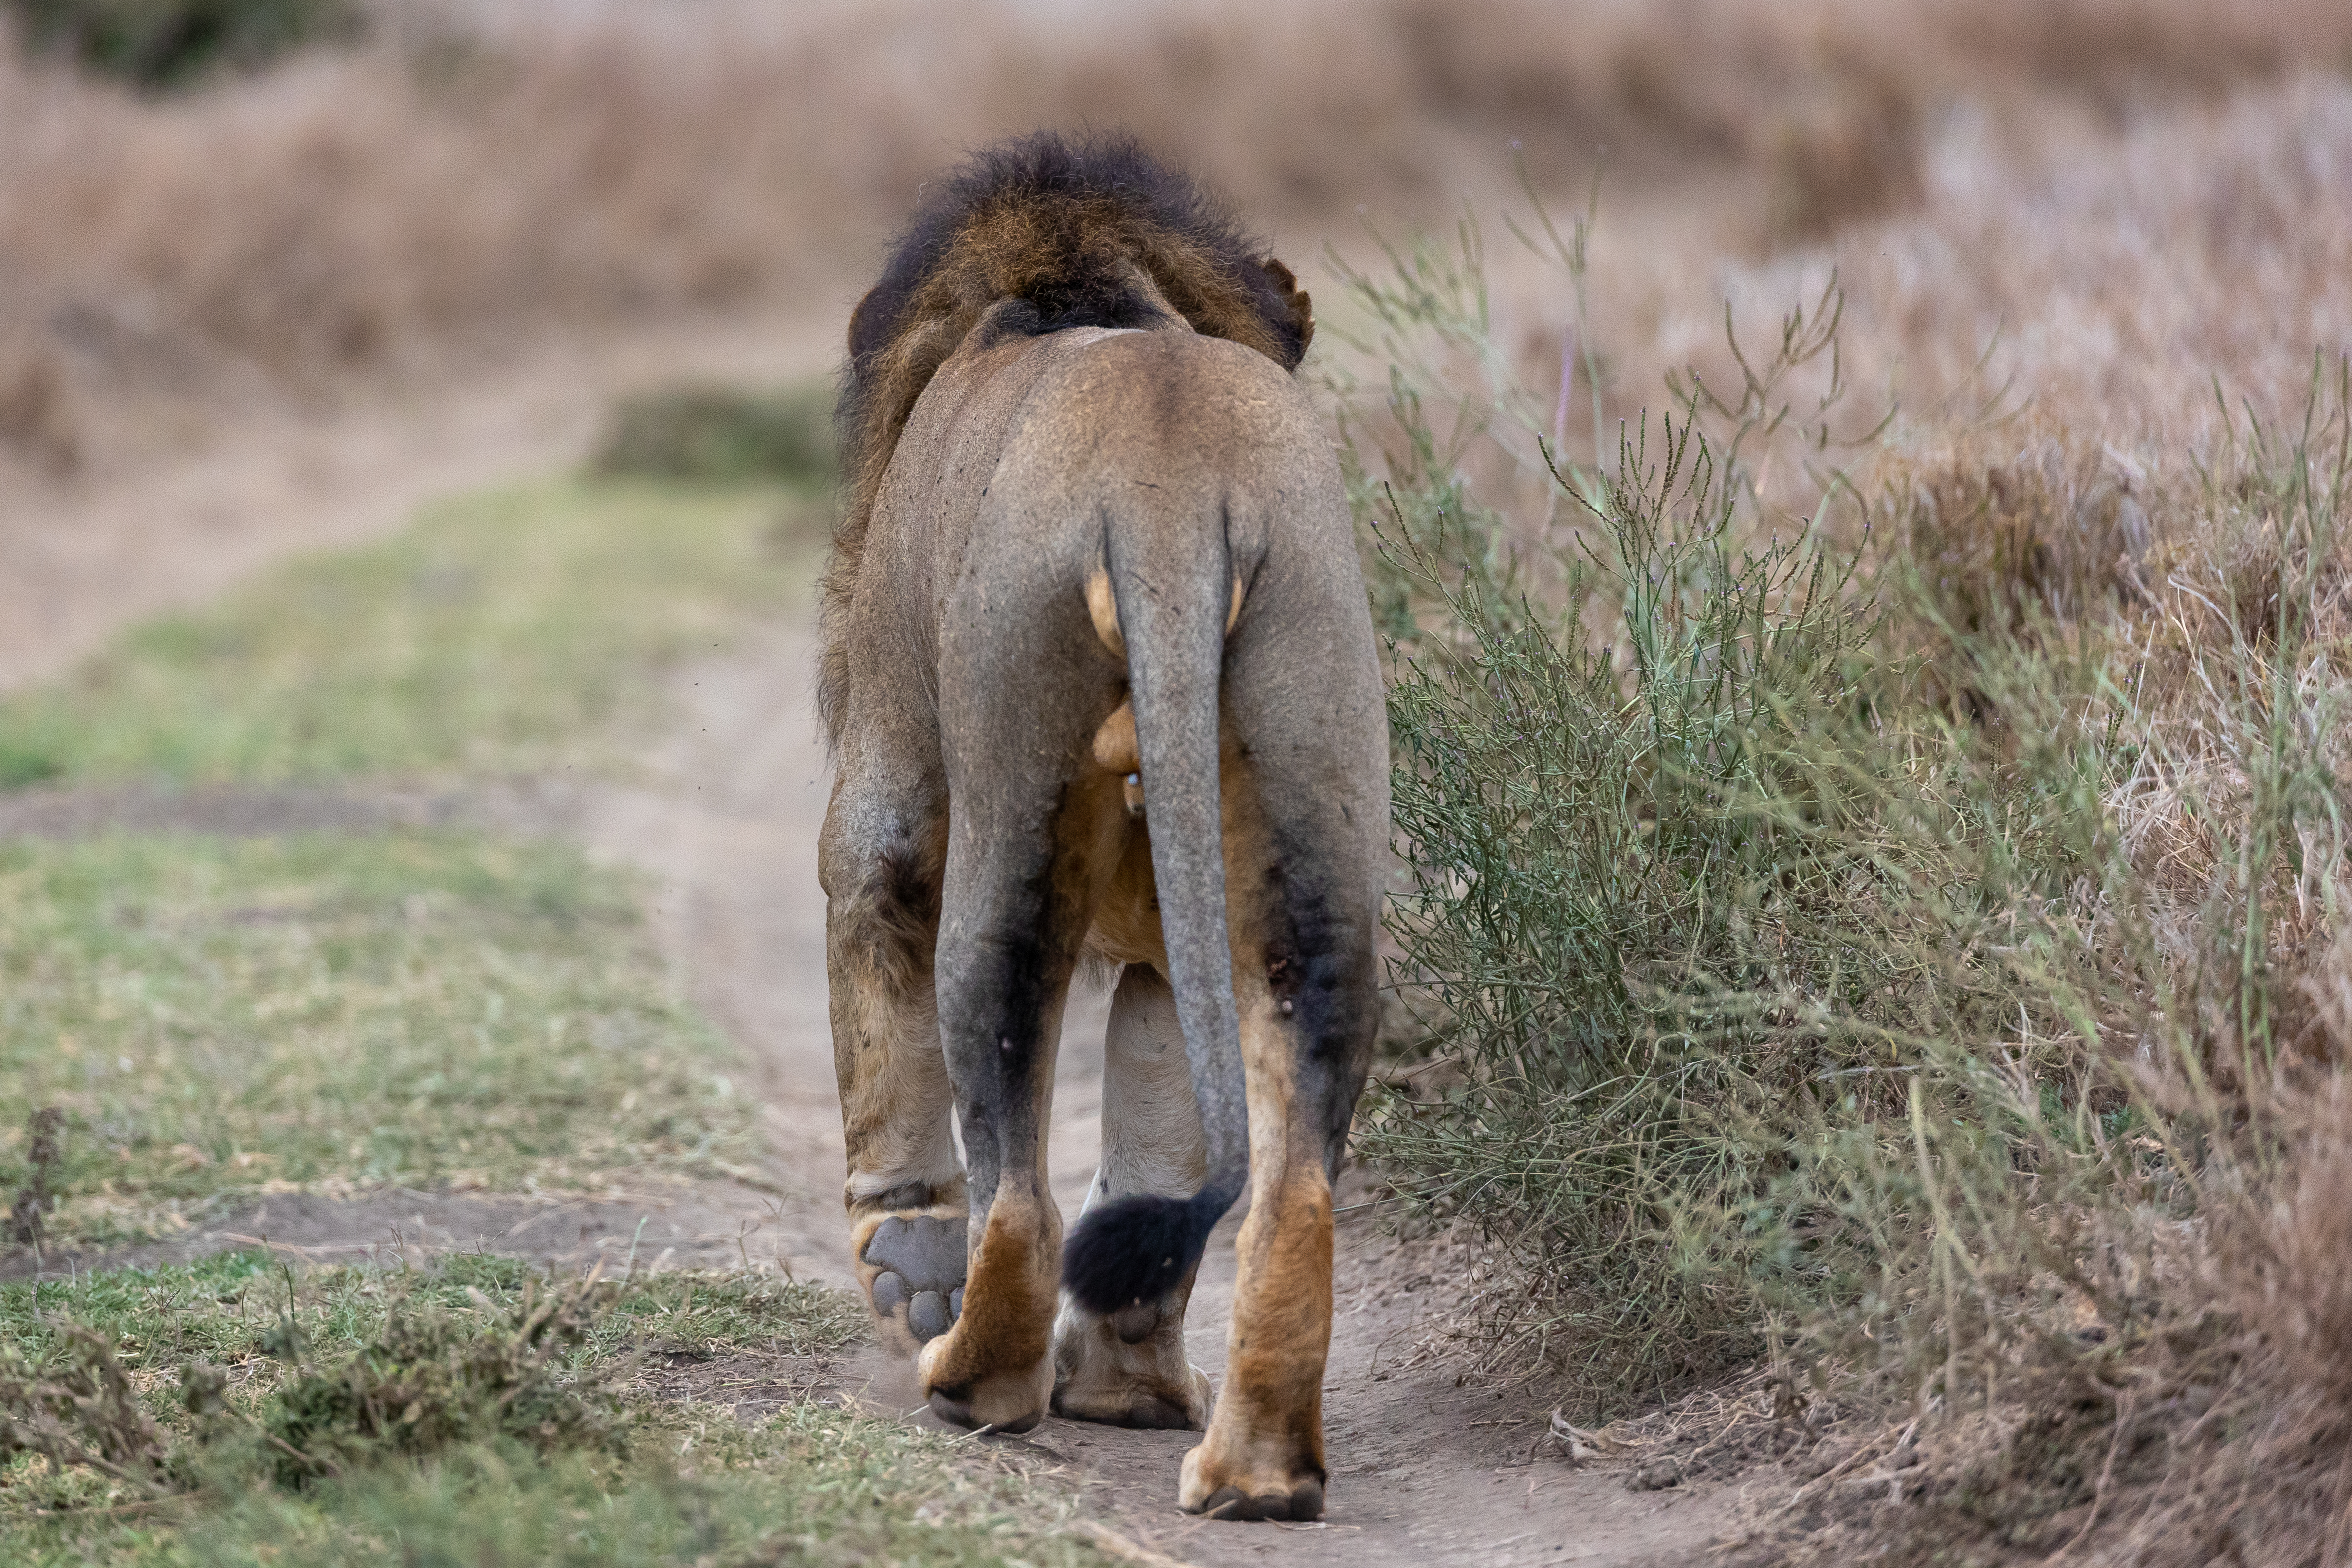 免费照片The lion walks along the path wagging his tail